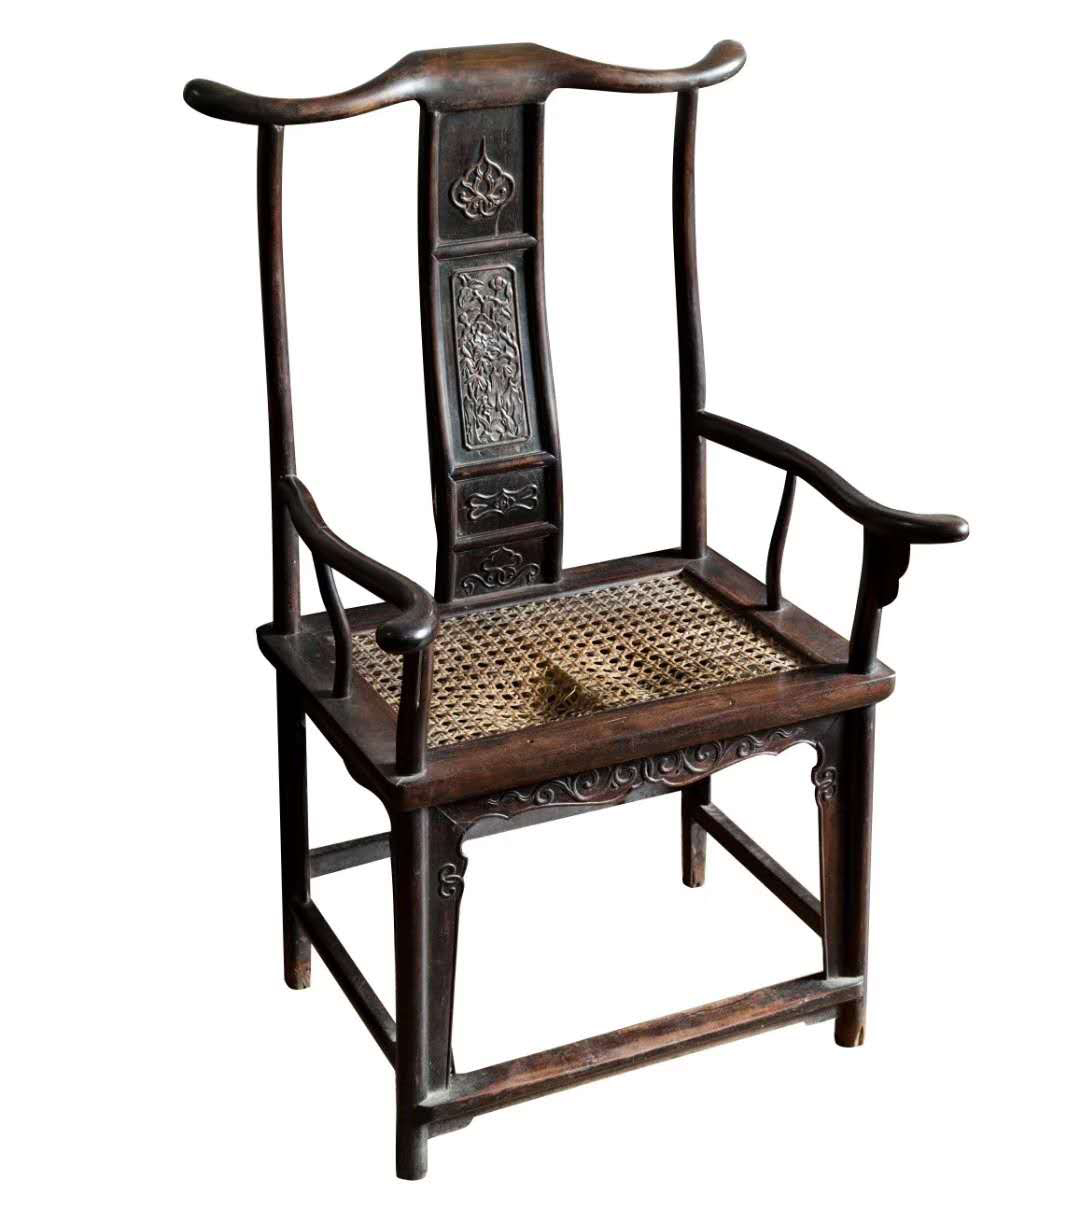 古代椅子有什么讲究?中国古代家具文化之椅子文化